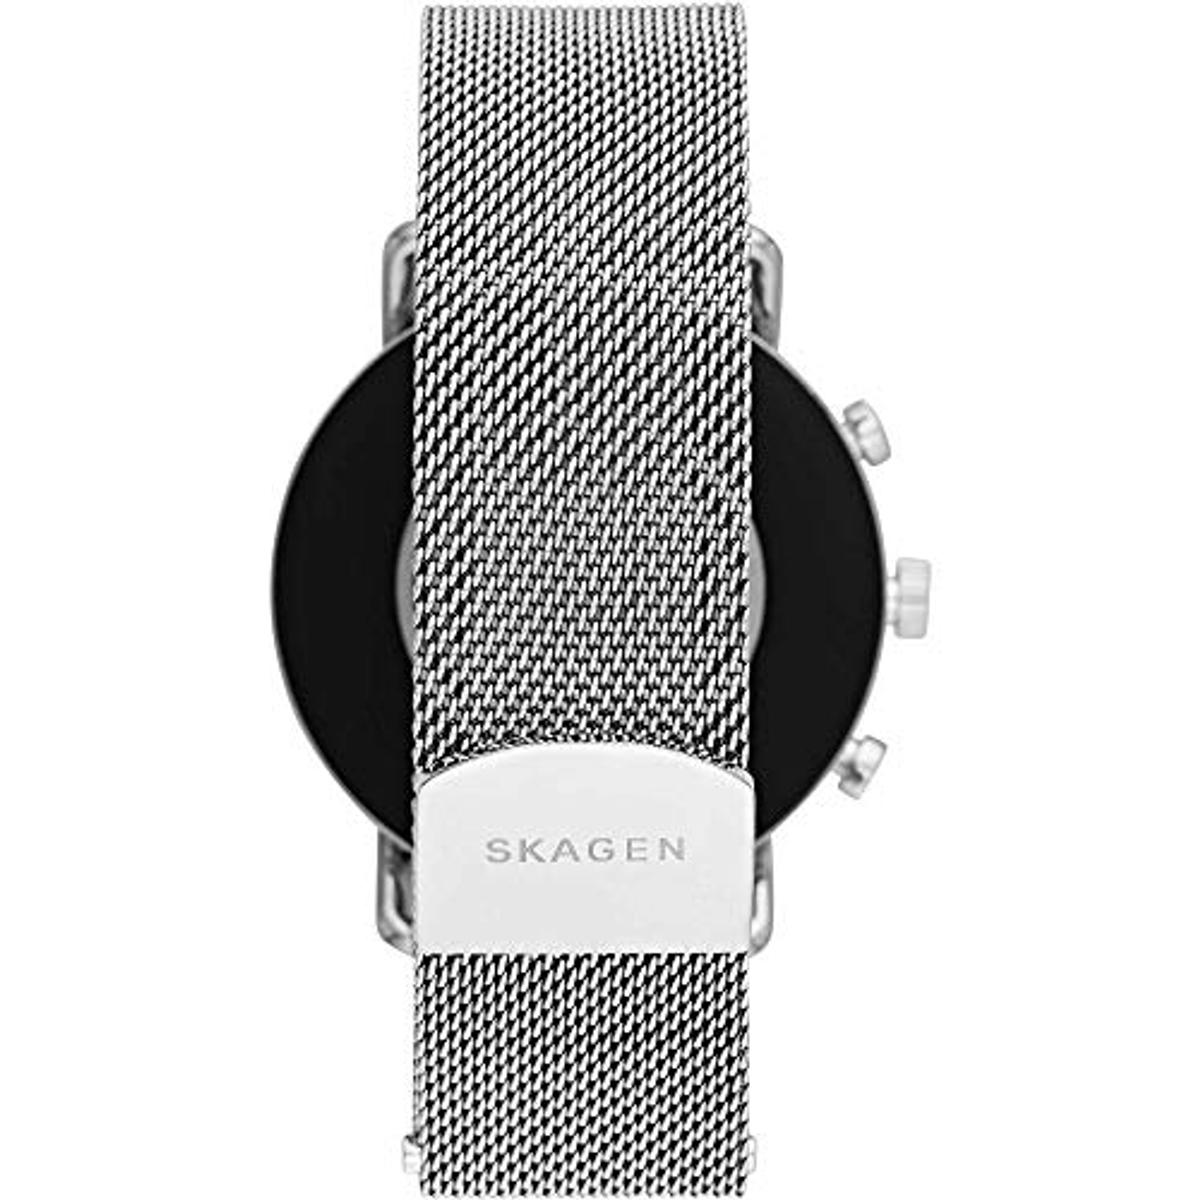 Skagen SKAGEN 185 silicone, SKT5102 Edelstahl mm, Smartwatch Smartwatch Silver/Black